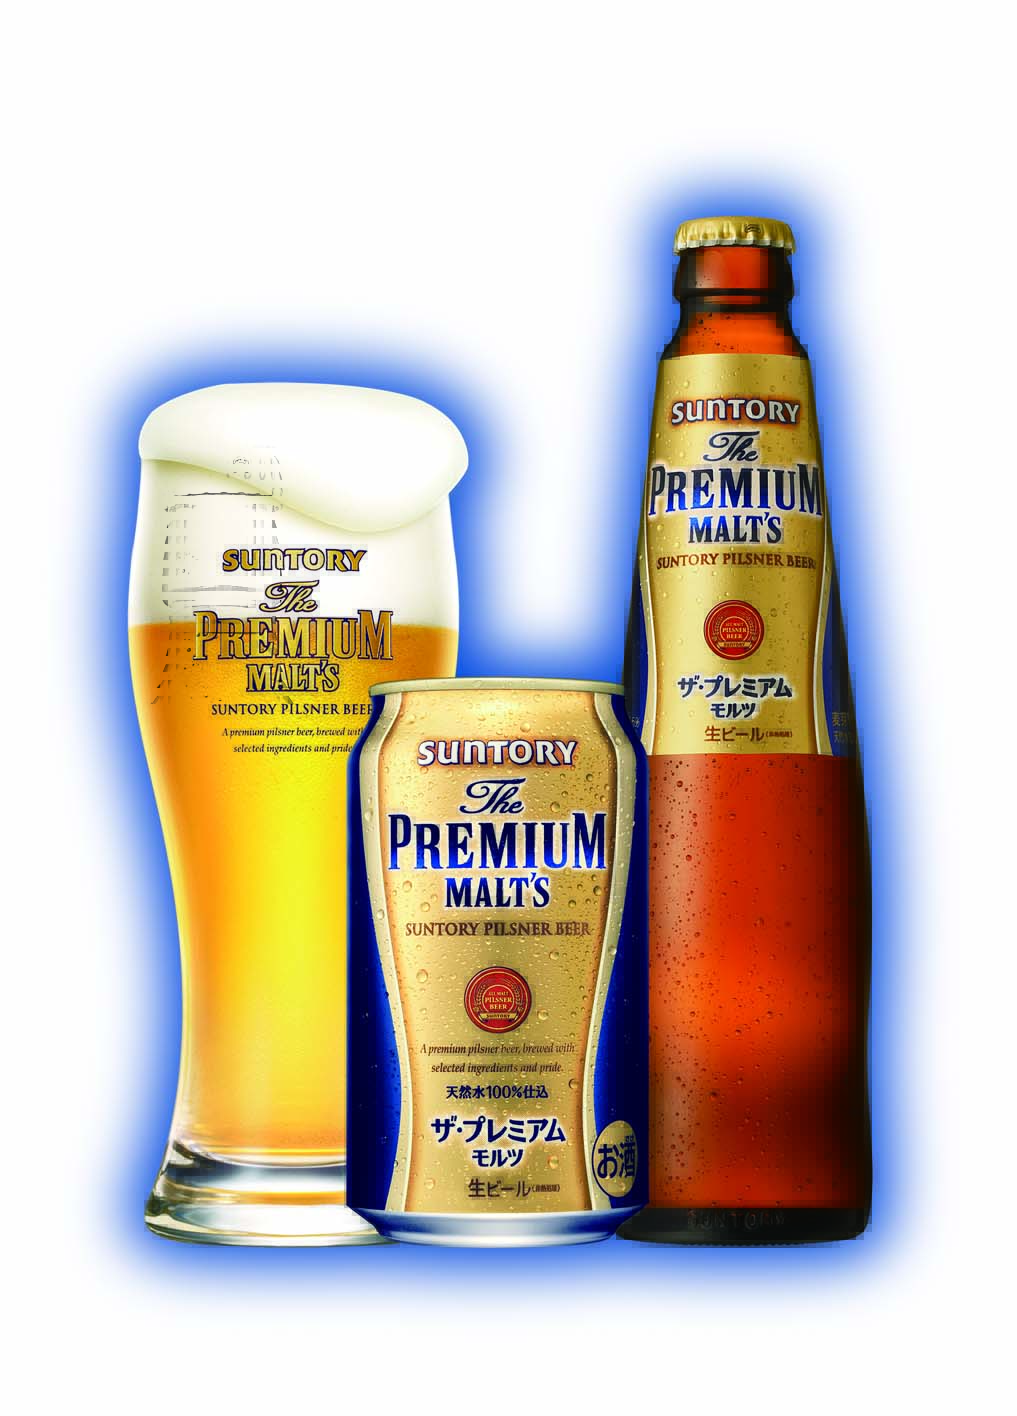 New Suntory Premium Malt Beer